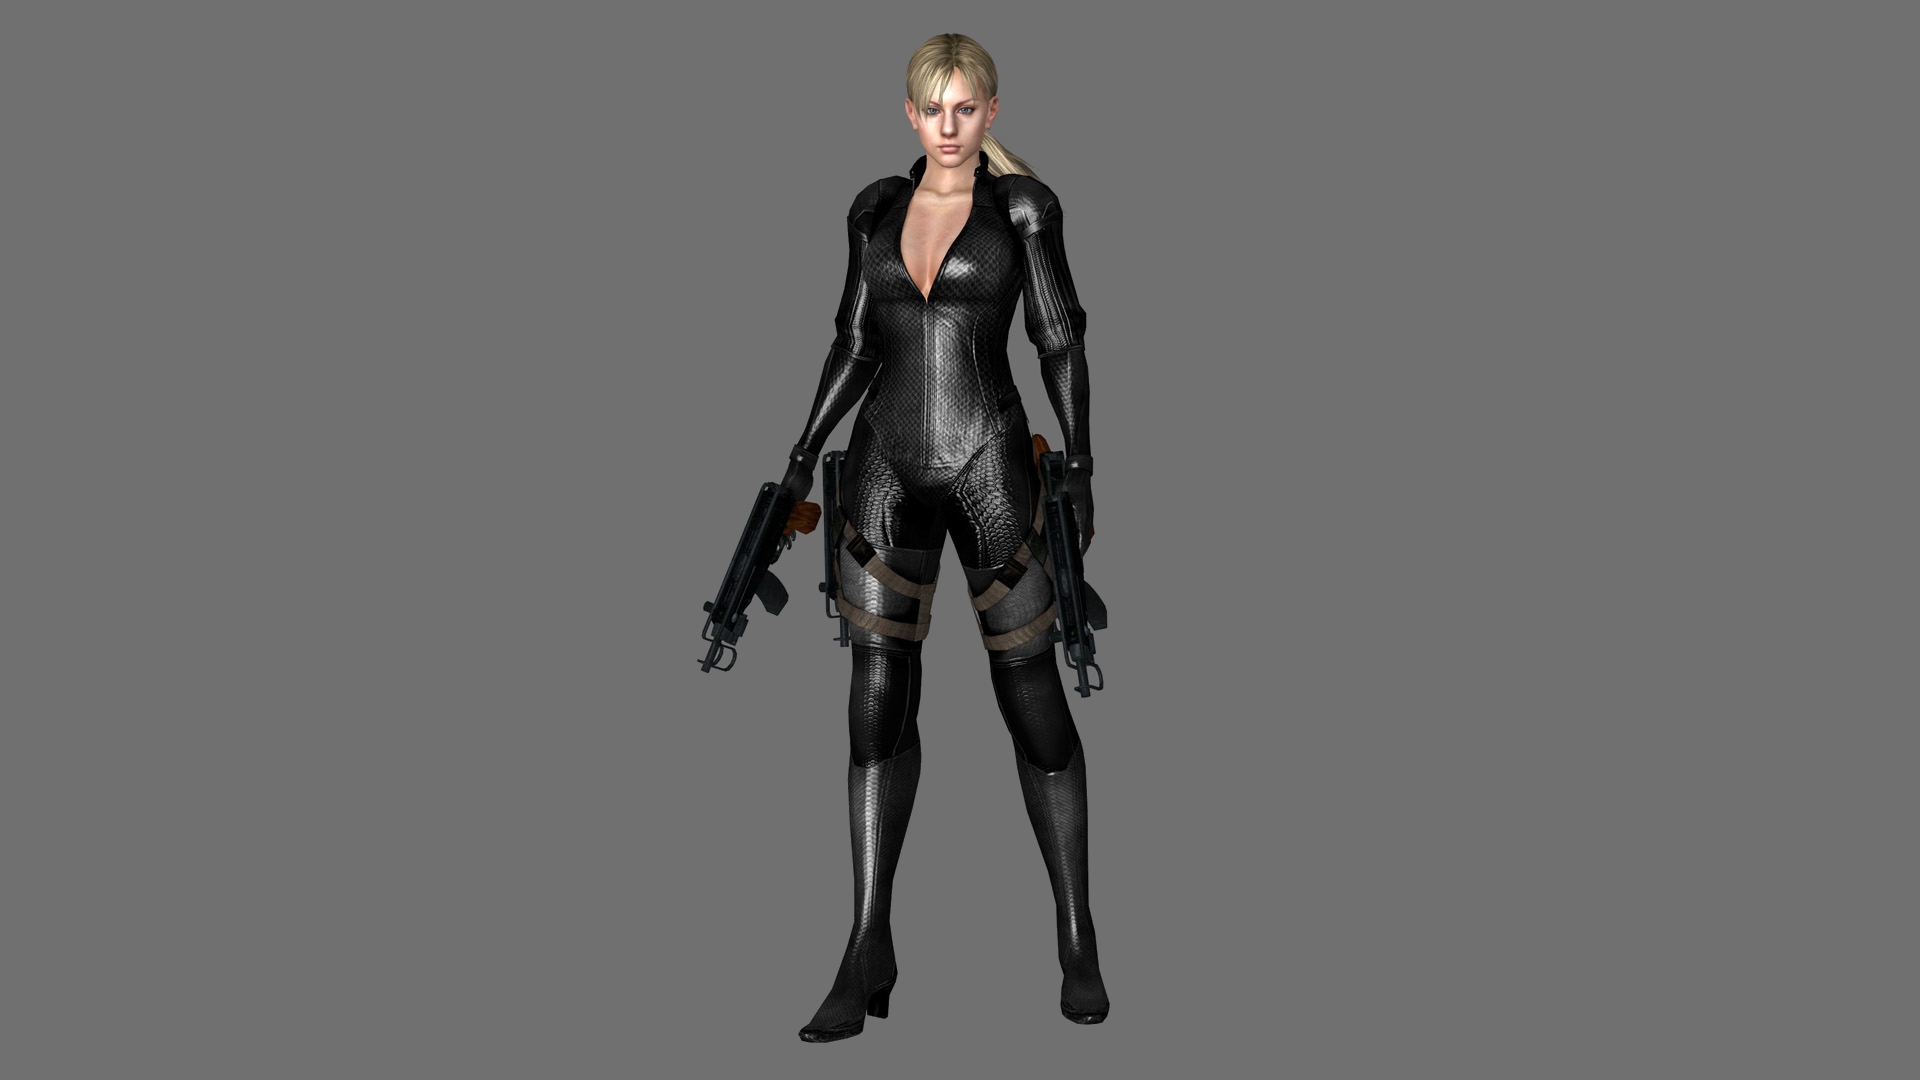 Download mobile wallpaper Resident Evil 5, Jill Valentine, Resident Evil, Video Game for free.